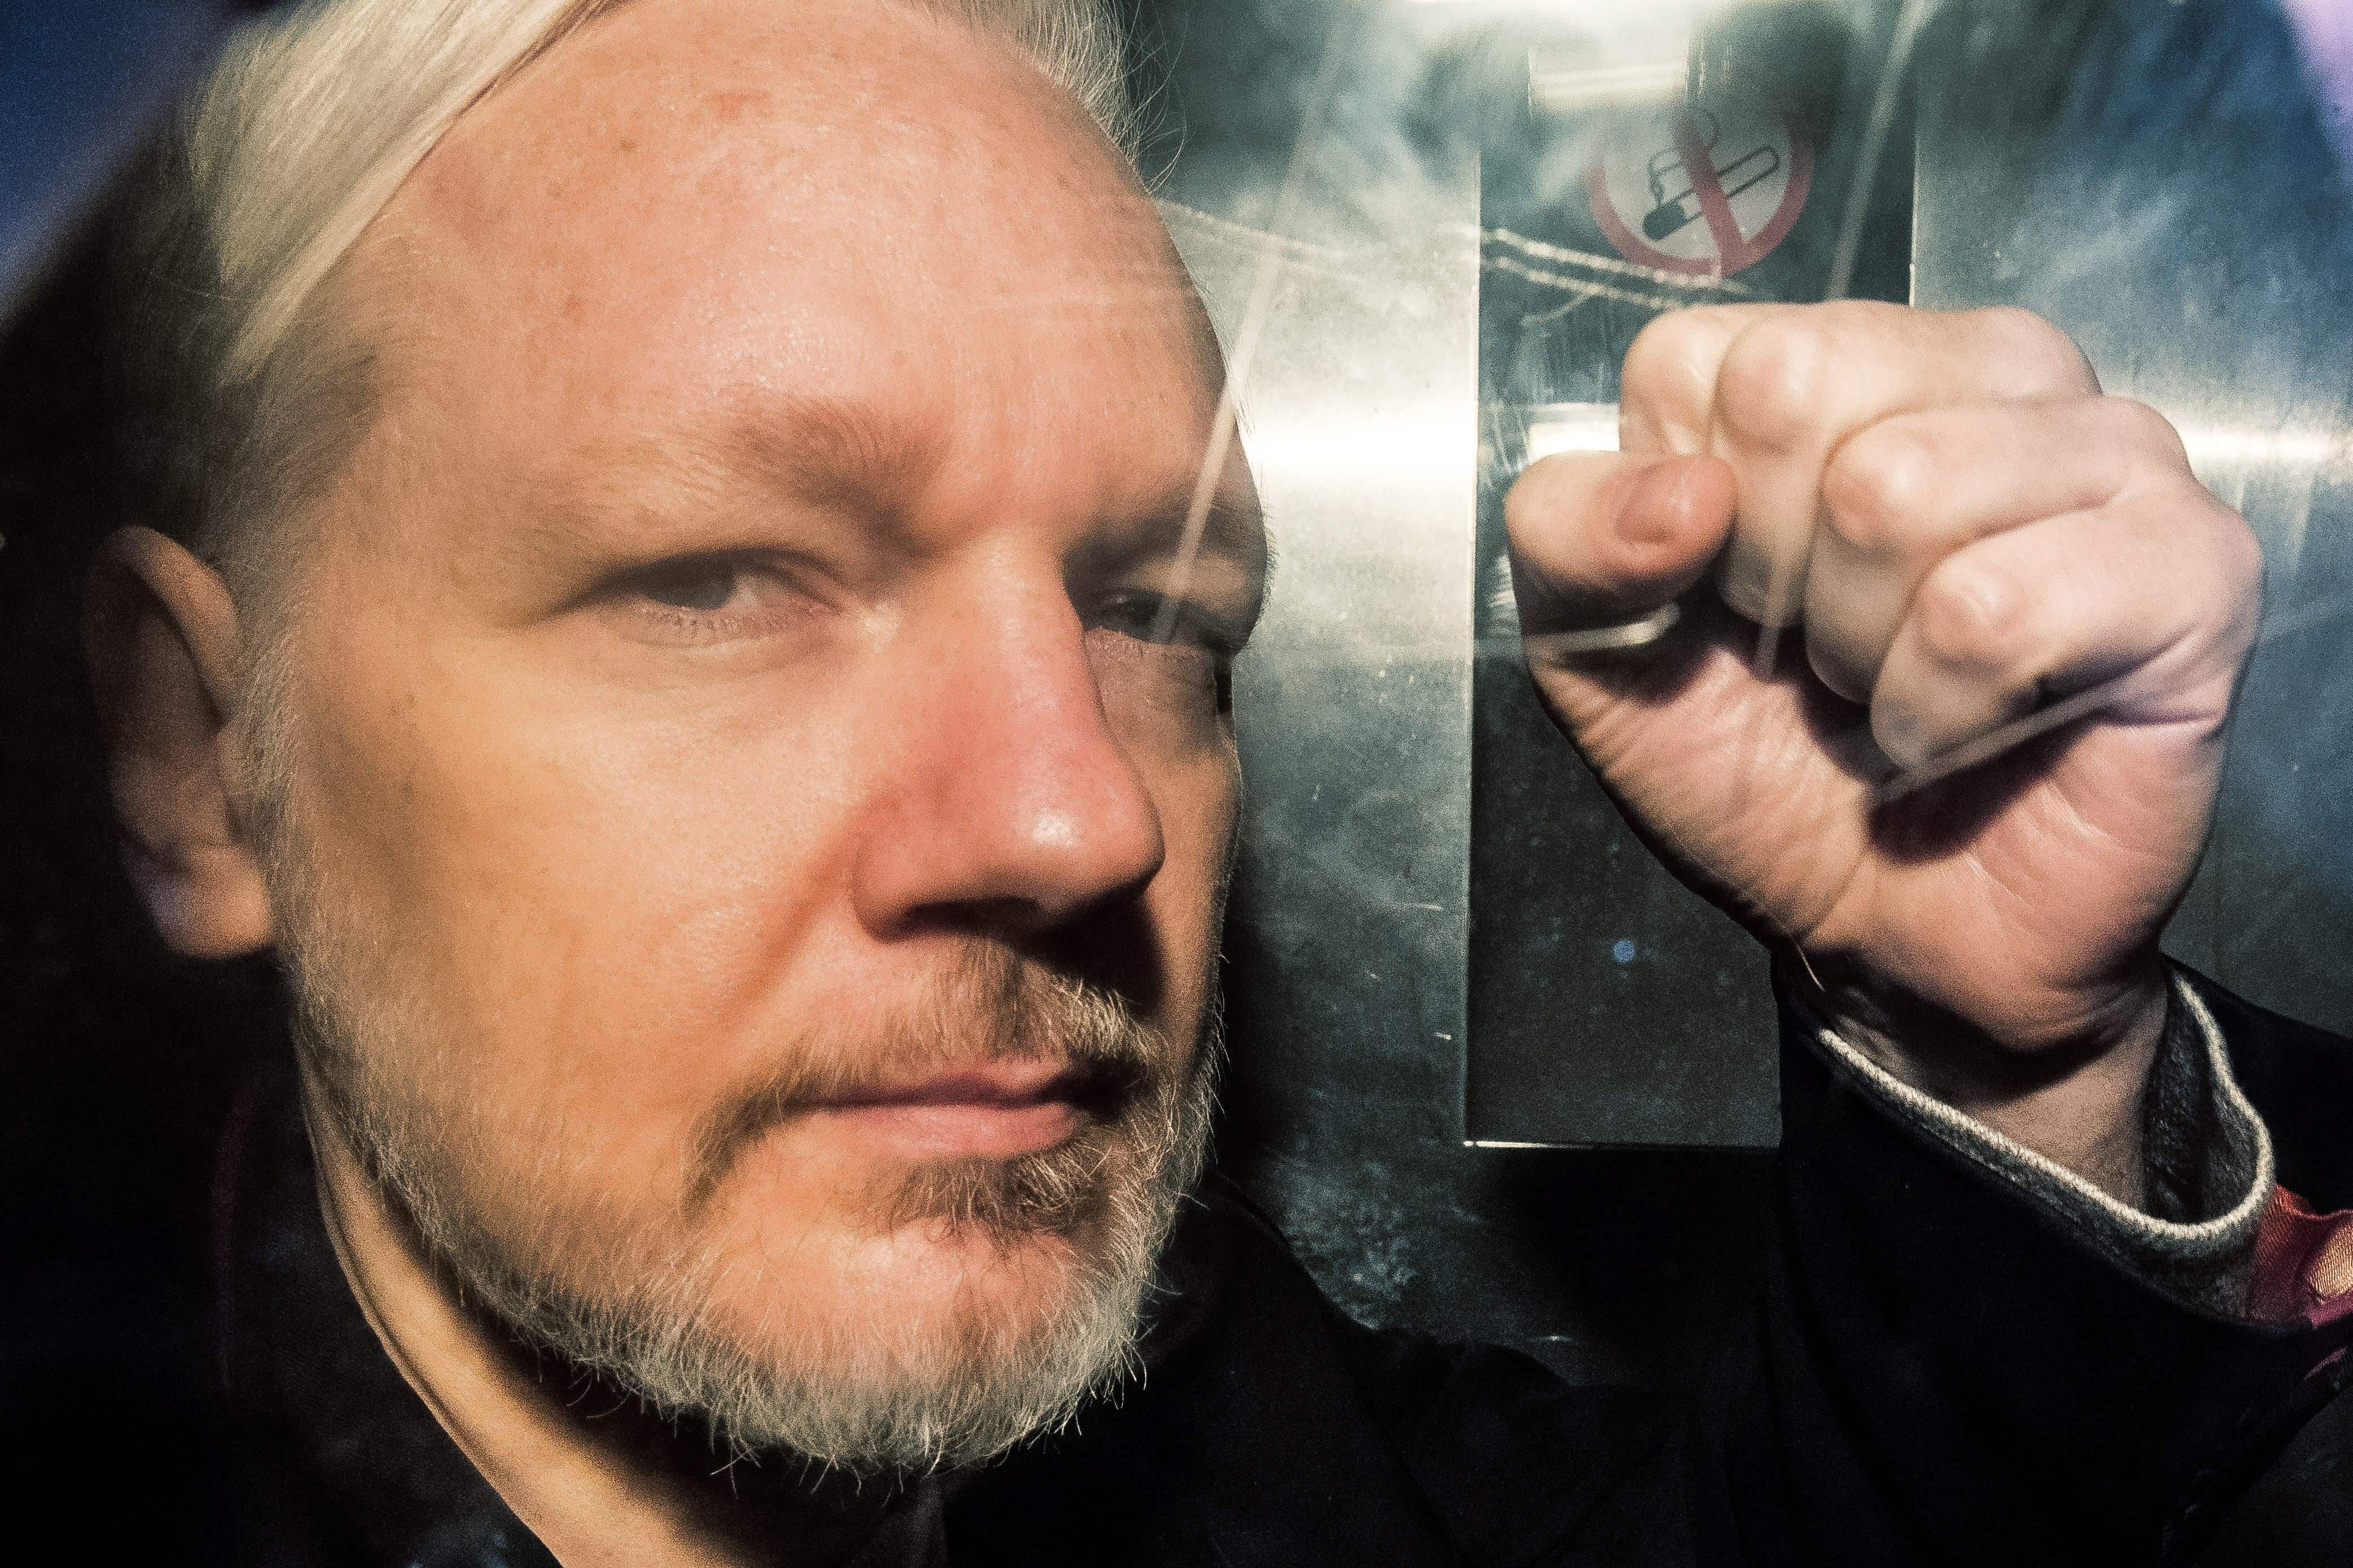 Seen through a window, Julian Assange makes a fist.